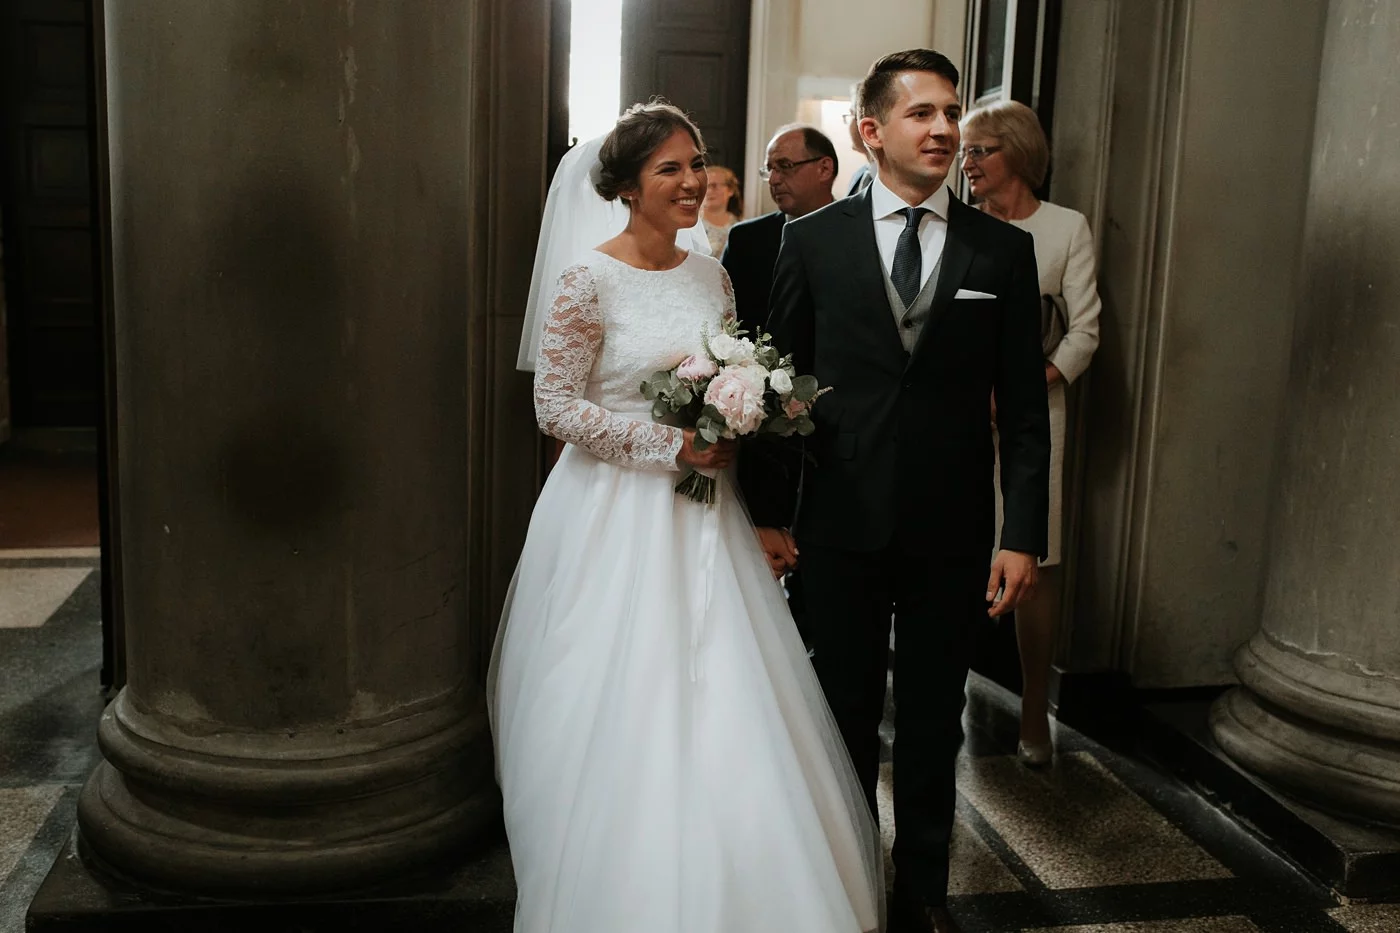 Dominika & Aleksander - Rustykalne wesele w stodole - Baborówko 45